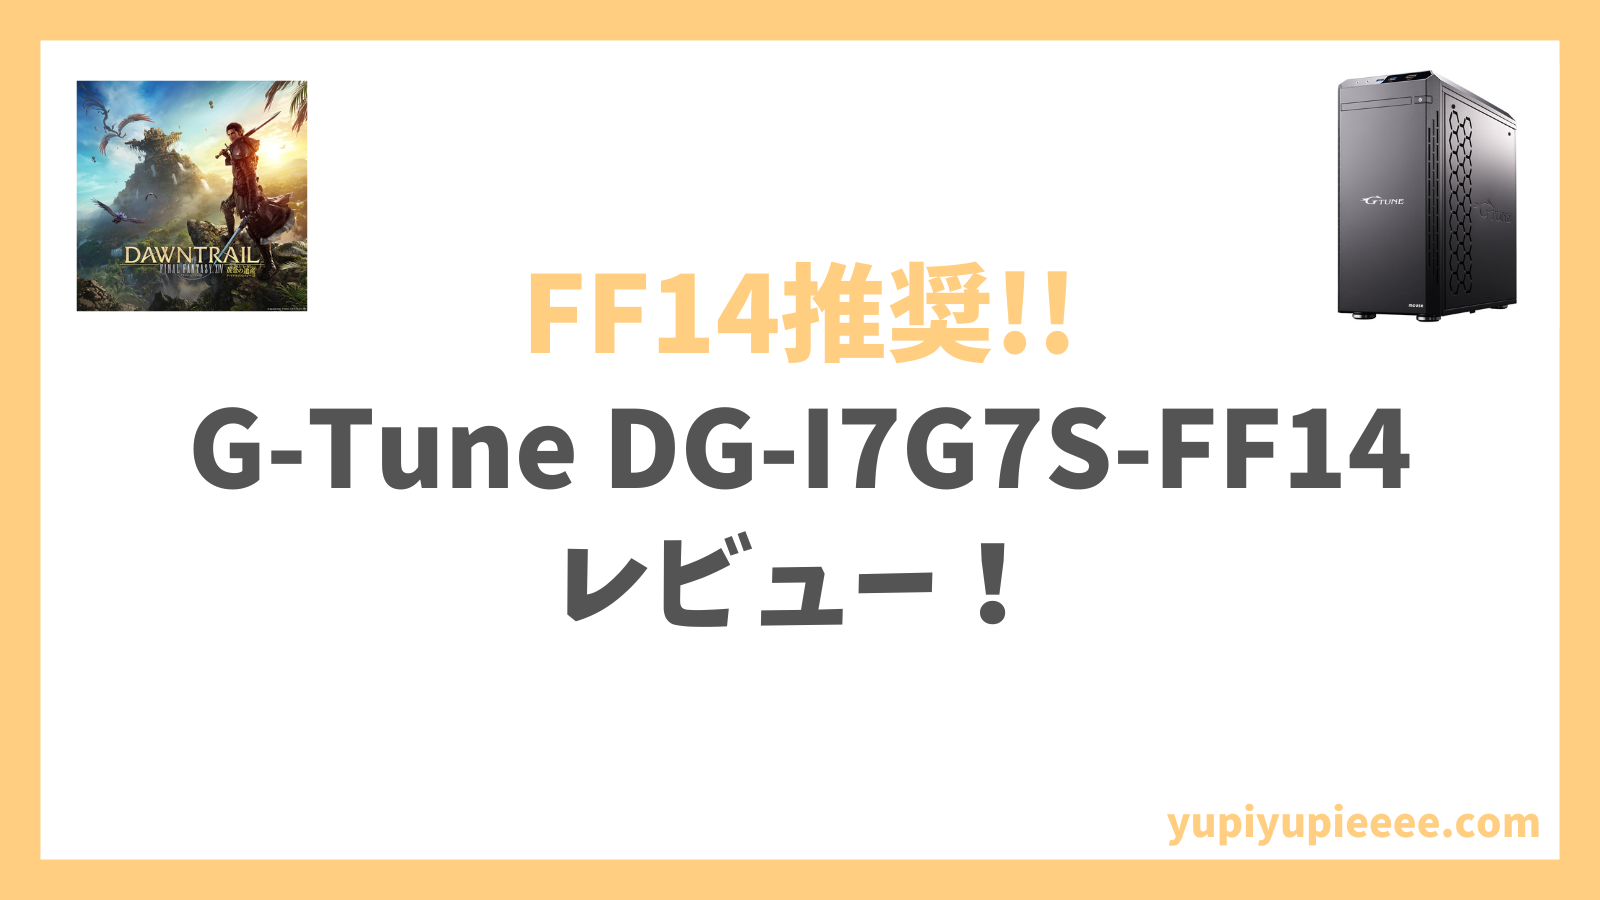 G-Tune DG-I7G7S-FF14アイキャッチ